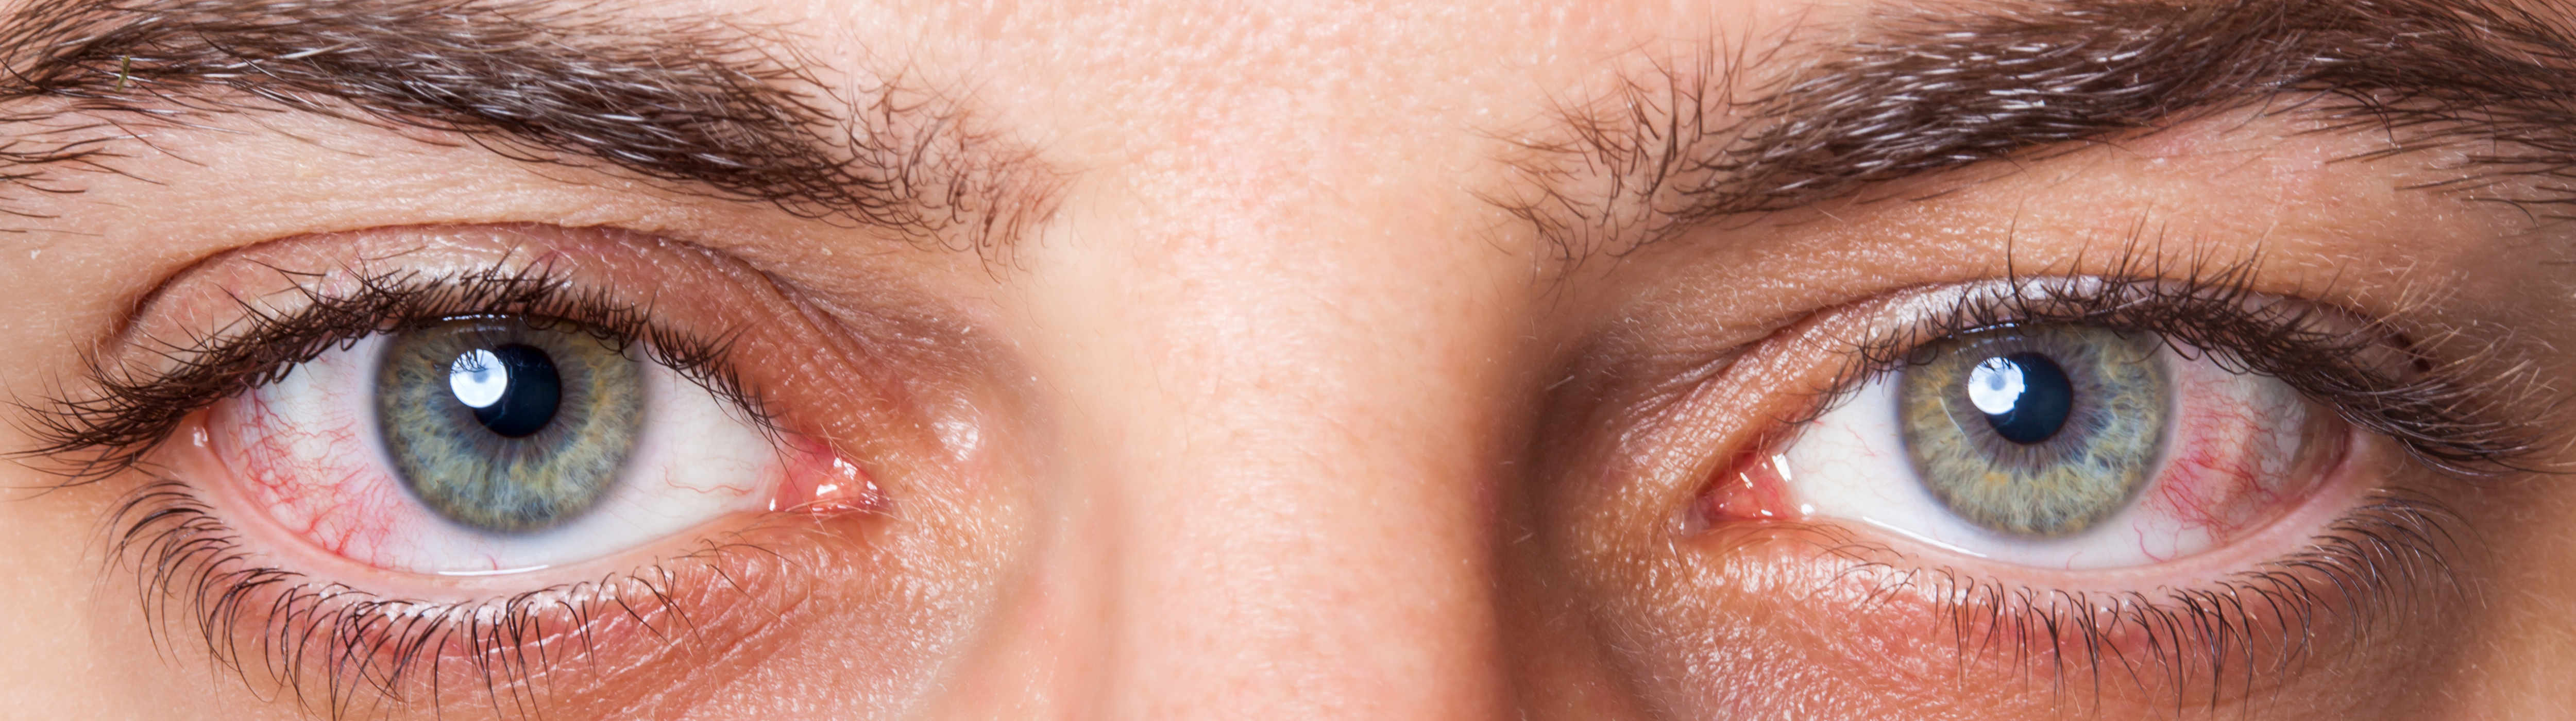 Ausschnitt eines Gesichts eines Mannes: Er hat rote Augen.